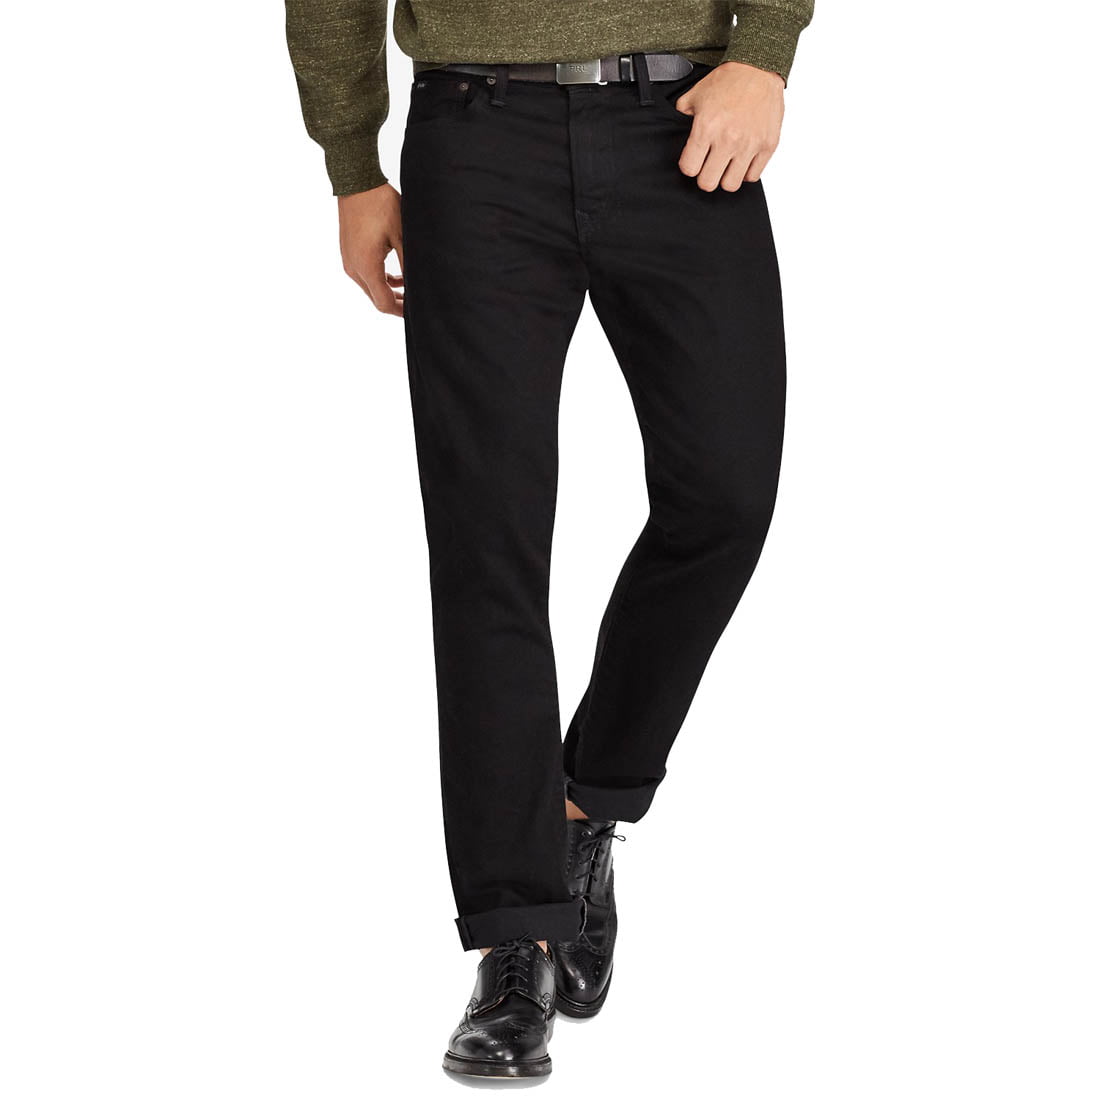 Polo Ralph Lauren Men's Classic Fit Stretch Jeans, Black, 33W X 34L -  